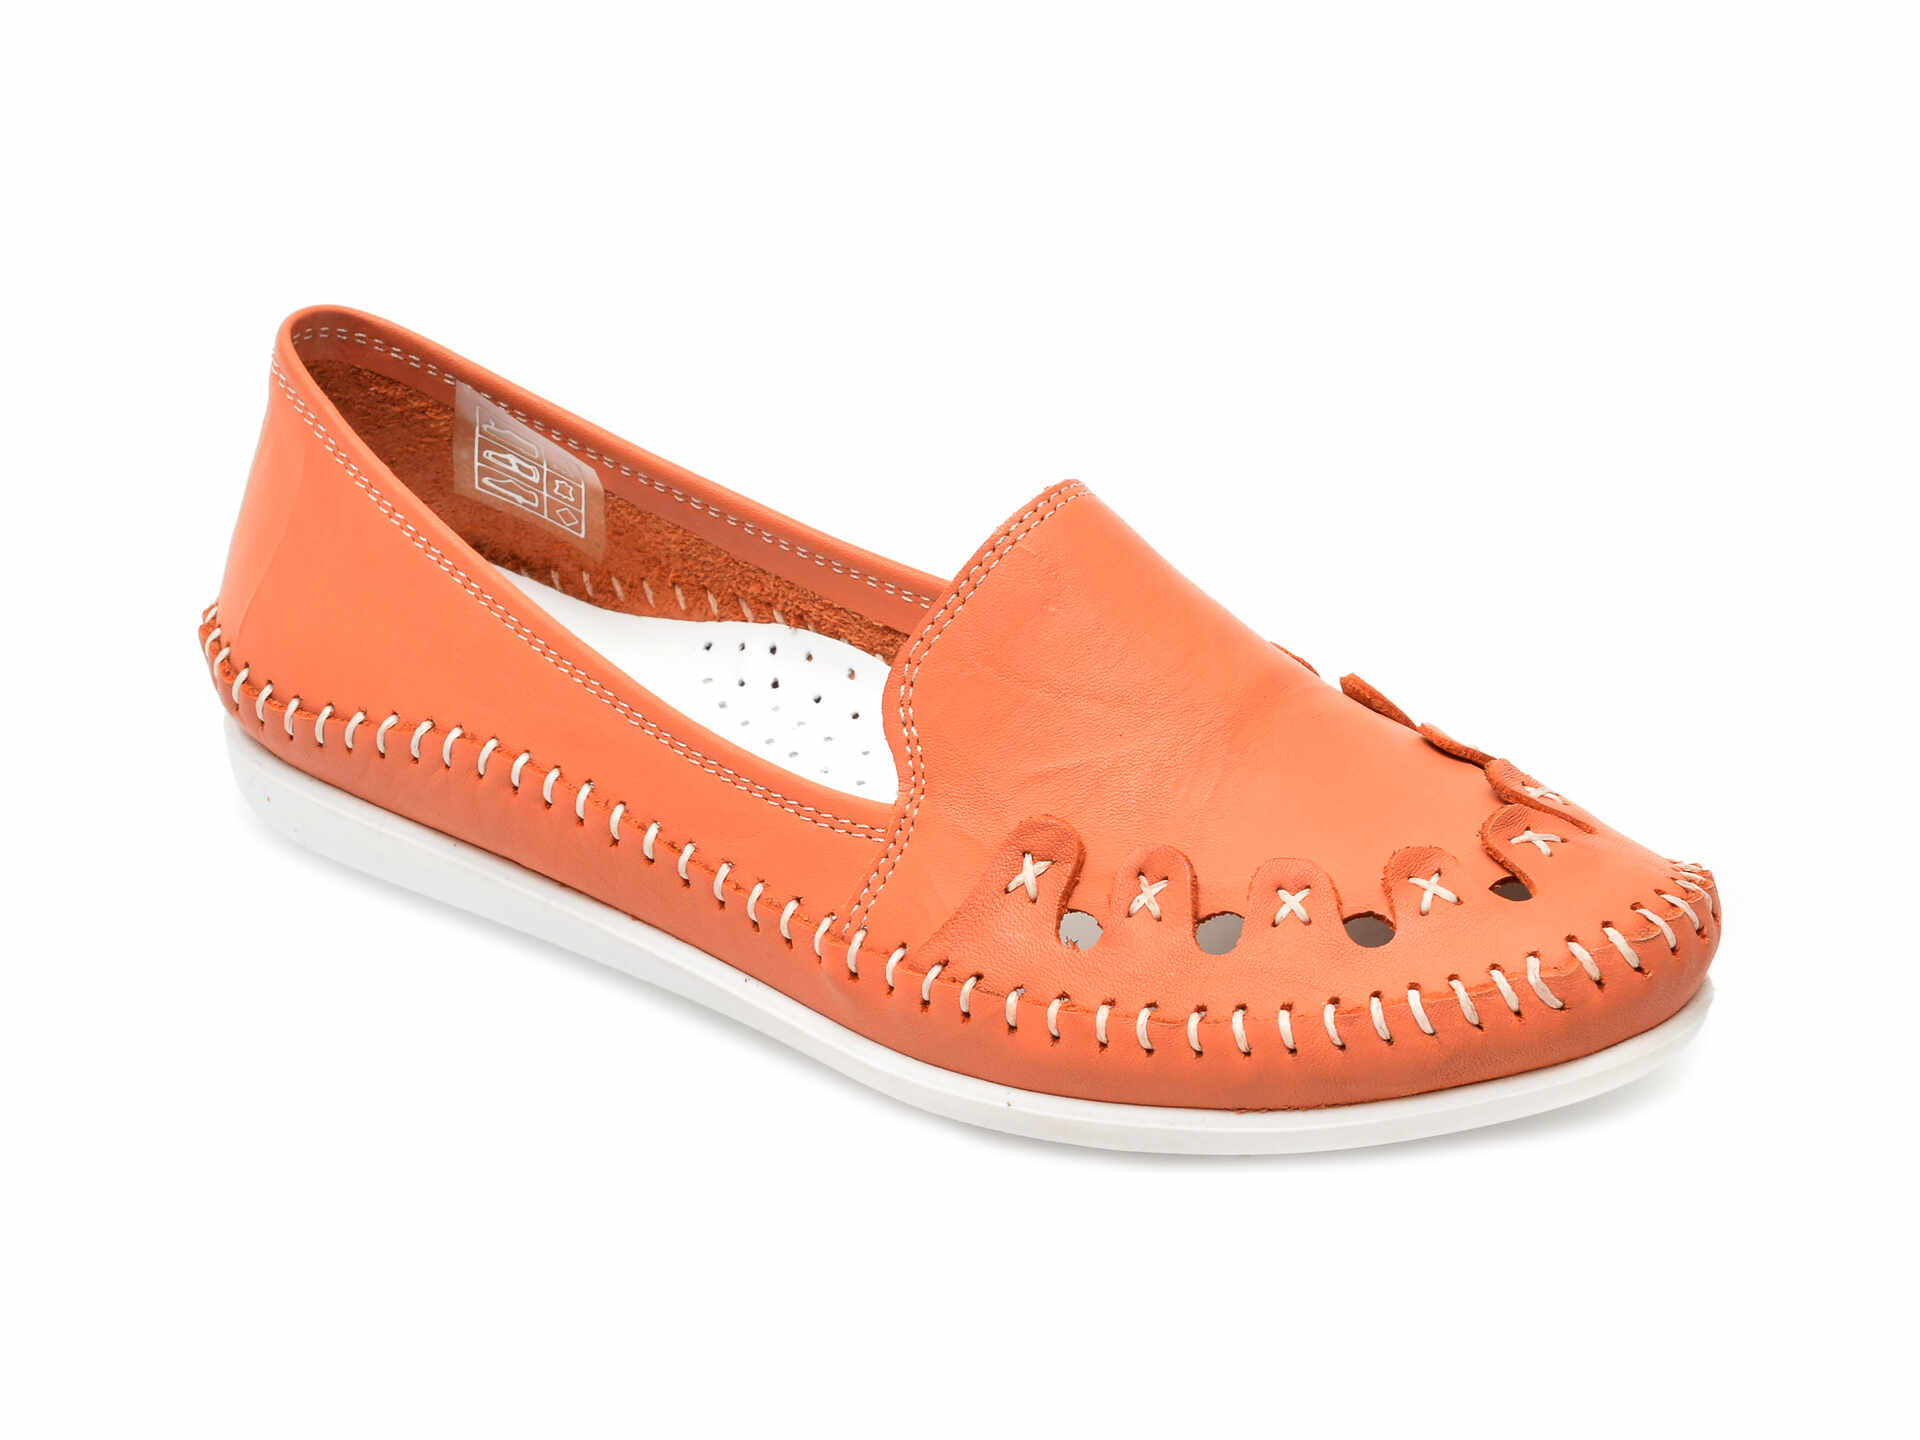 Pantofi FLAVIA PASSINI portocalii, 429, din piele naturala